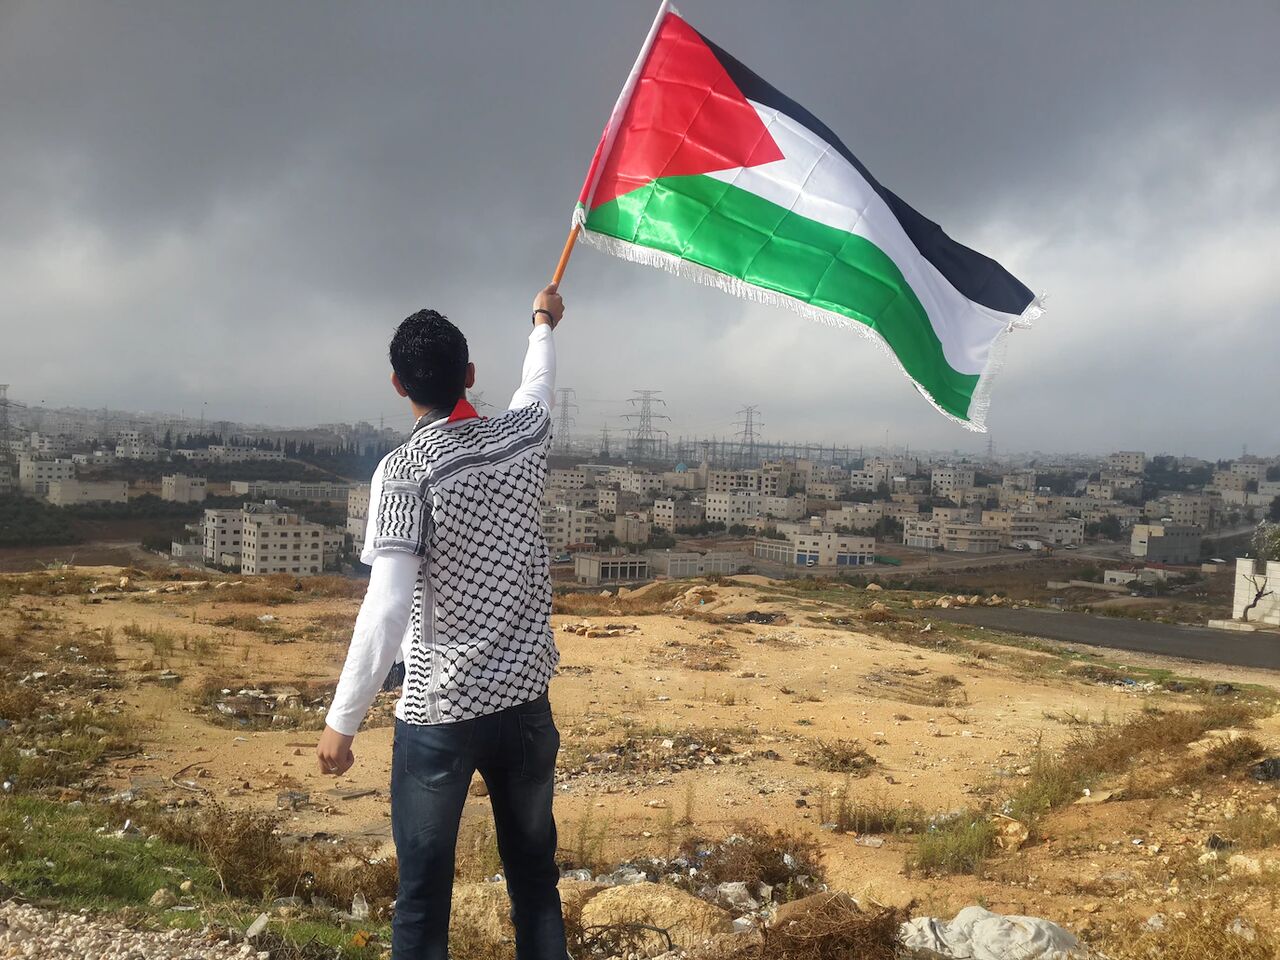 رویداد فلسطین و نقش من می تواند موجب هدفمندتر شدن اقدامات کنشگران حوزه فلسطین شود